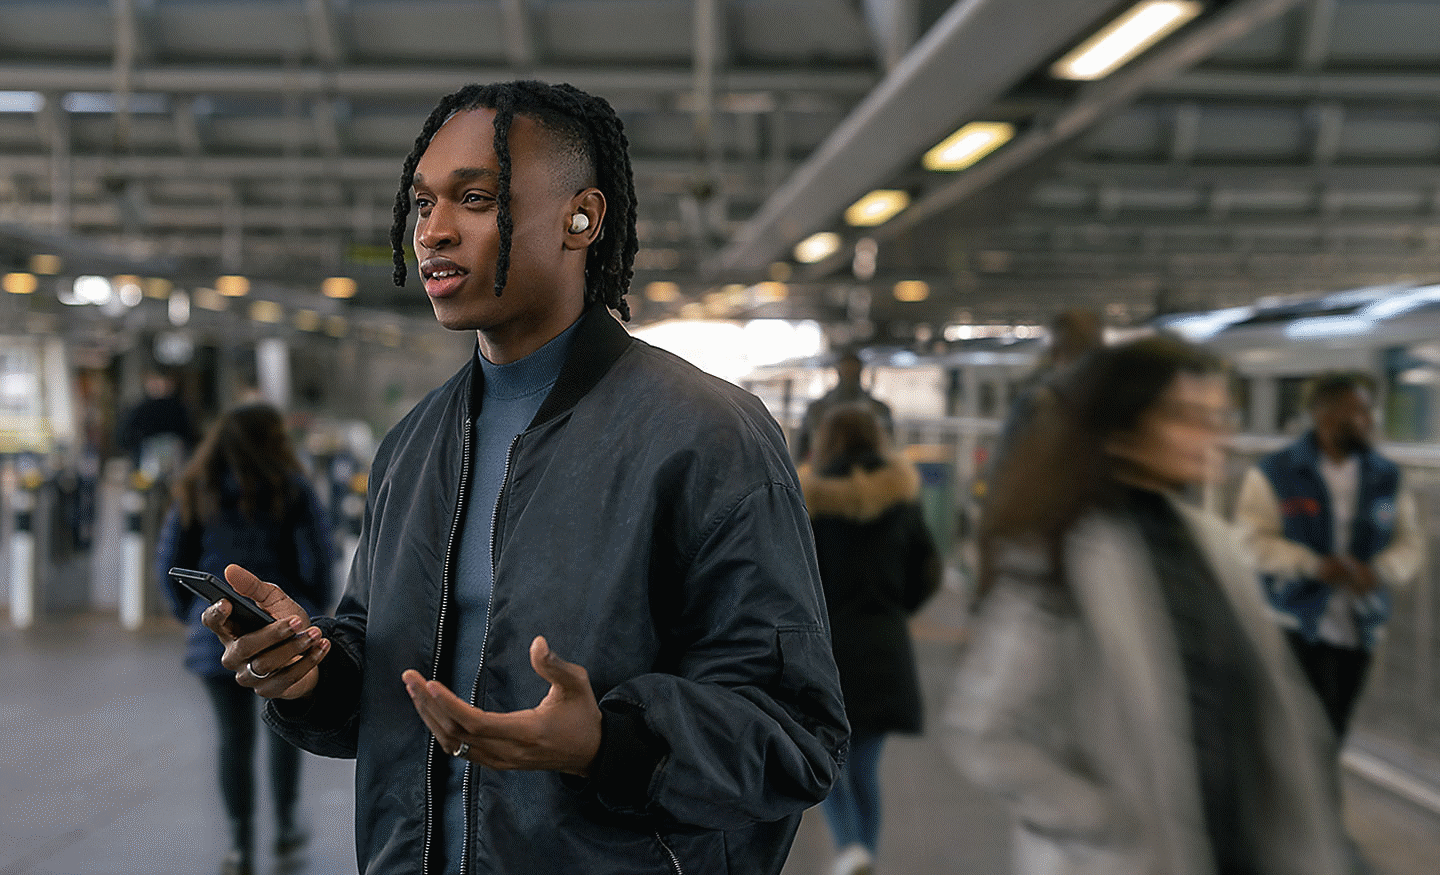 Kép egy telefonáló személyről, aki egy forgalmas tömegközlekedési állomáson áll, és WF-1000XM5 fülhallgatót visel